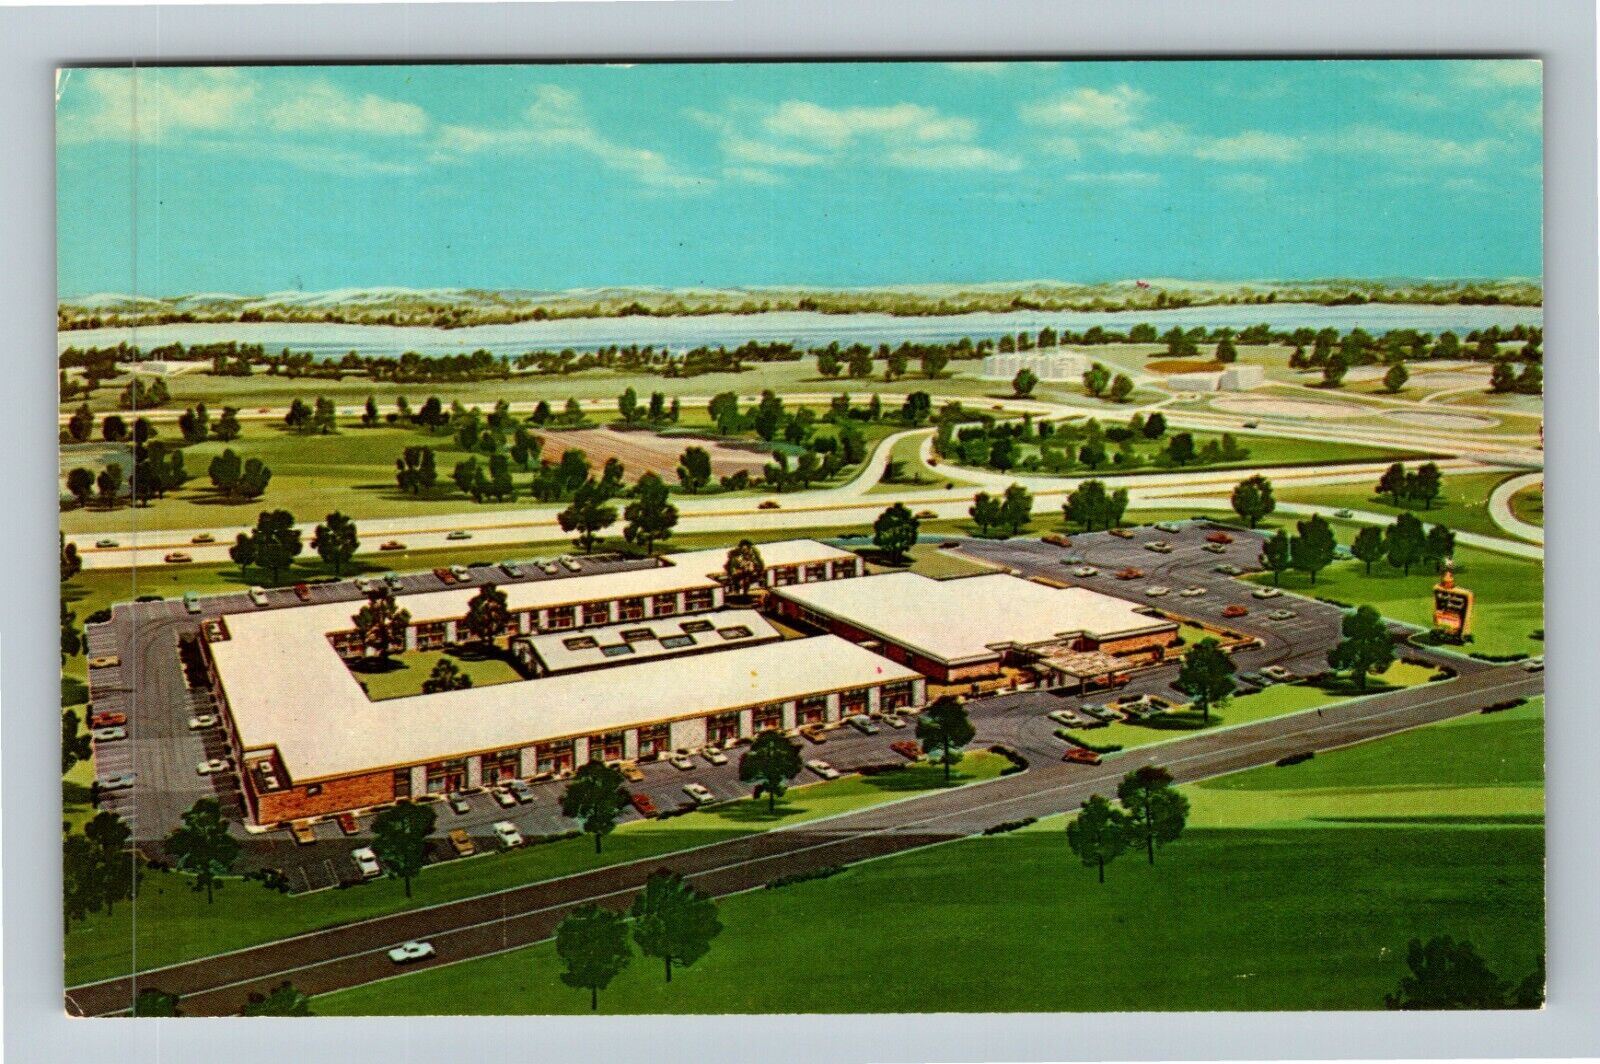 East Springfield IL-Illinois, Holiday Inn Motel, Antique Vintage Postcard